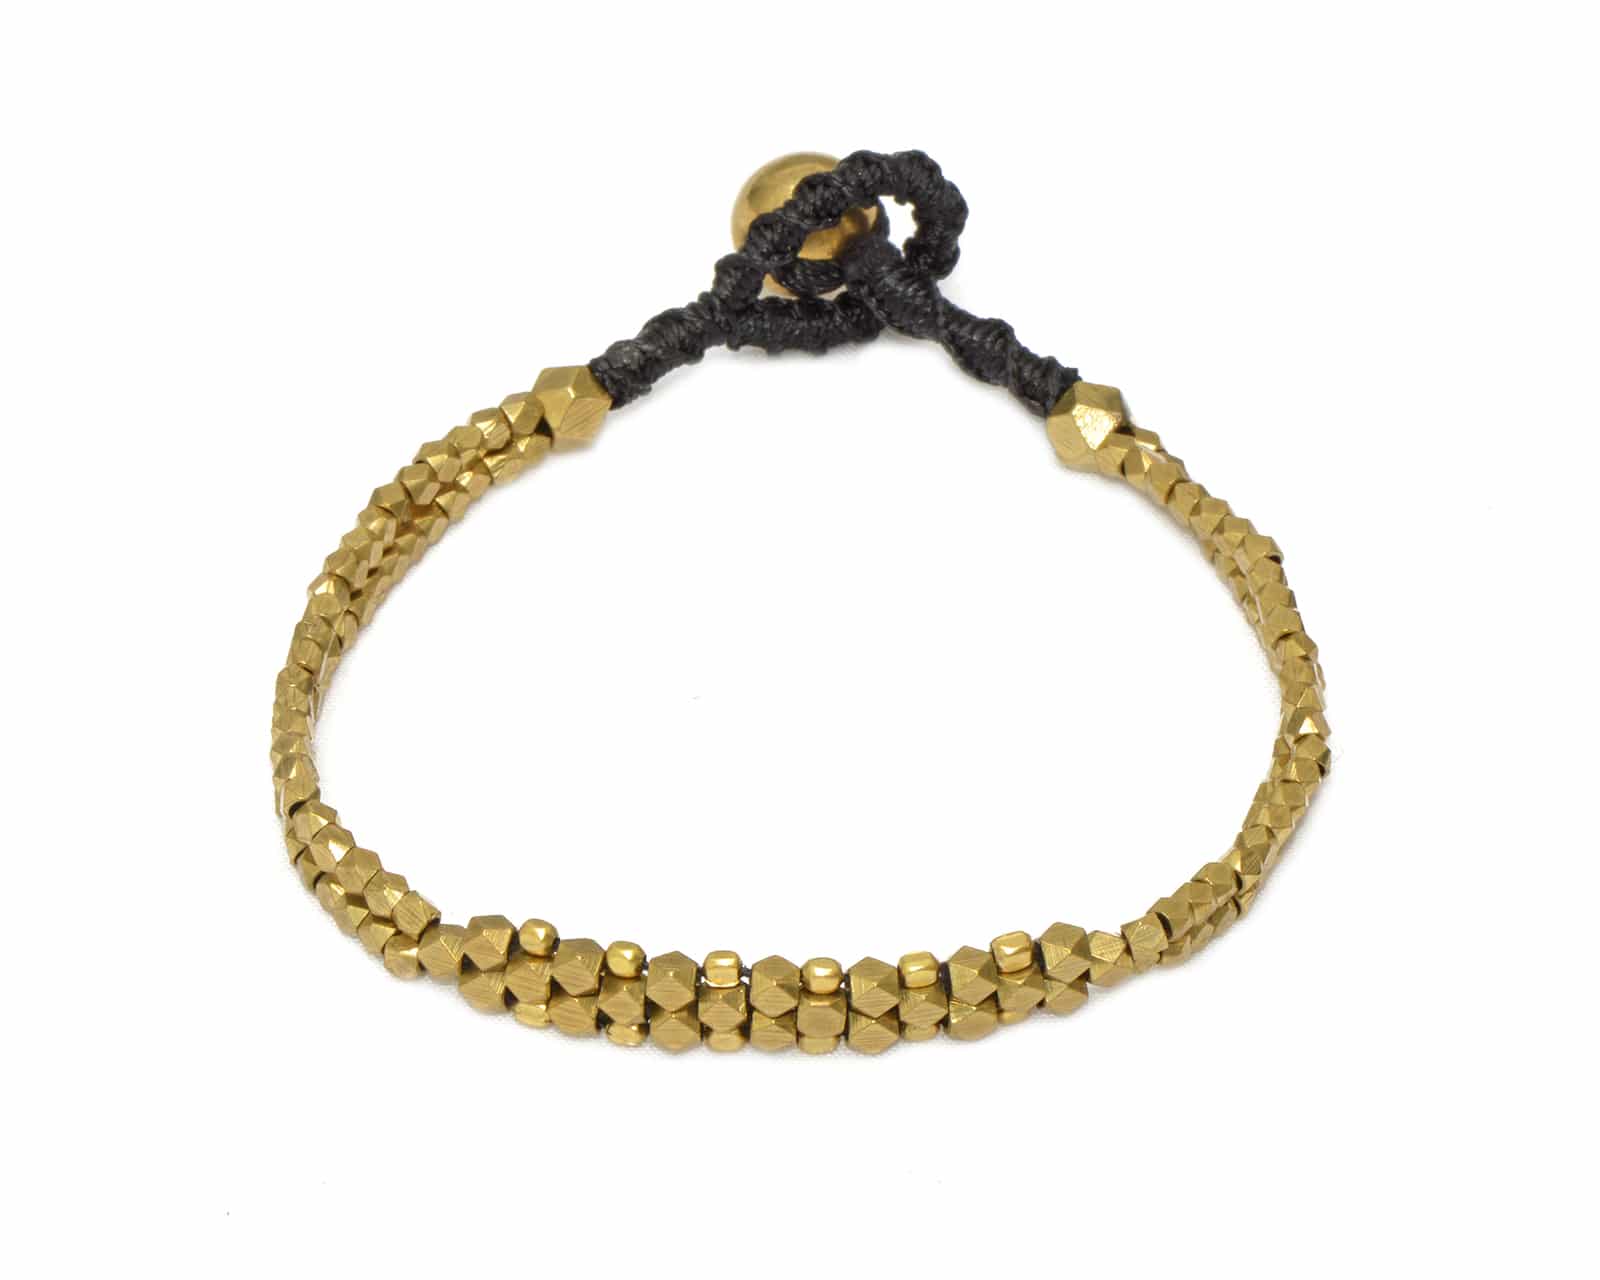 Bracelet en laiton doré de la marque française Nataraj